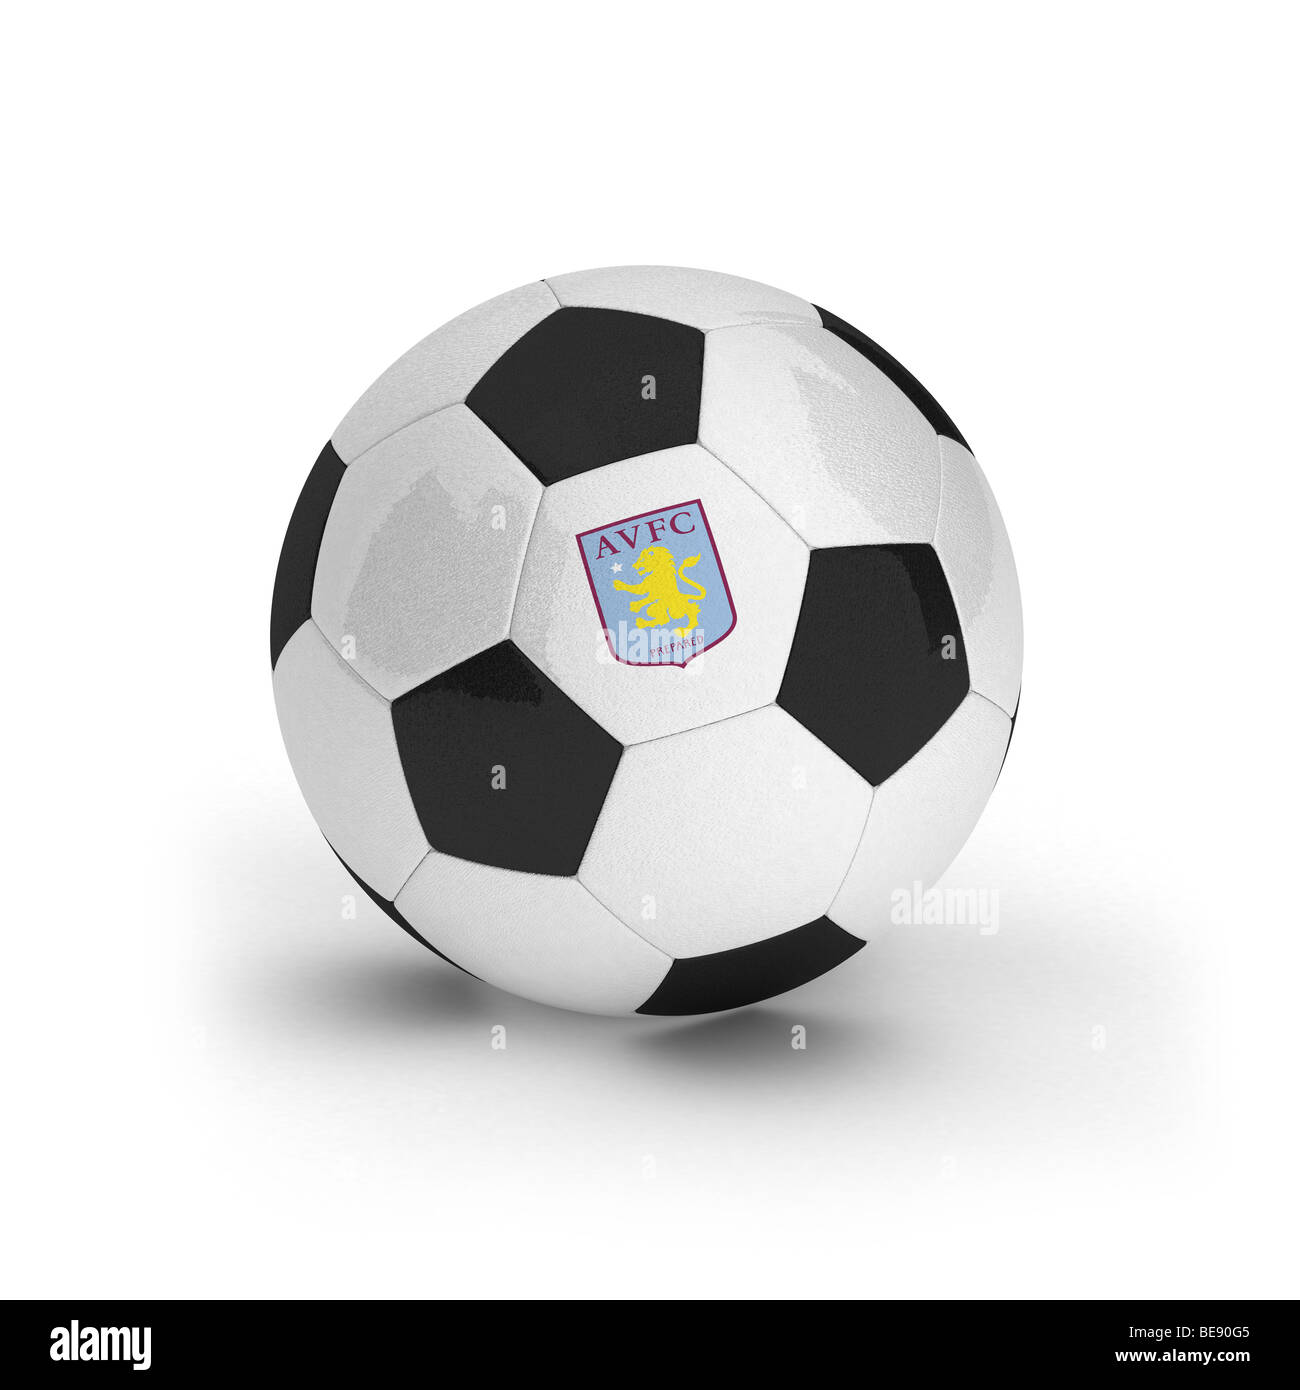 Aston Villa Football Club simbolo su di un pallone da calcio Foto Stock